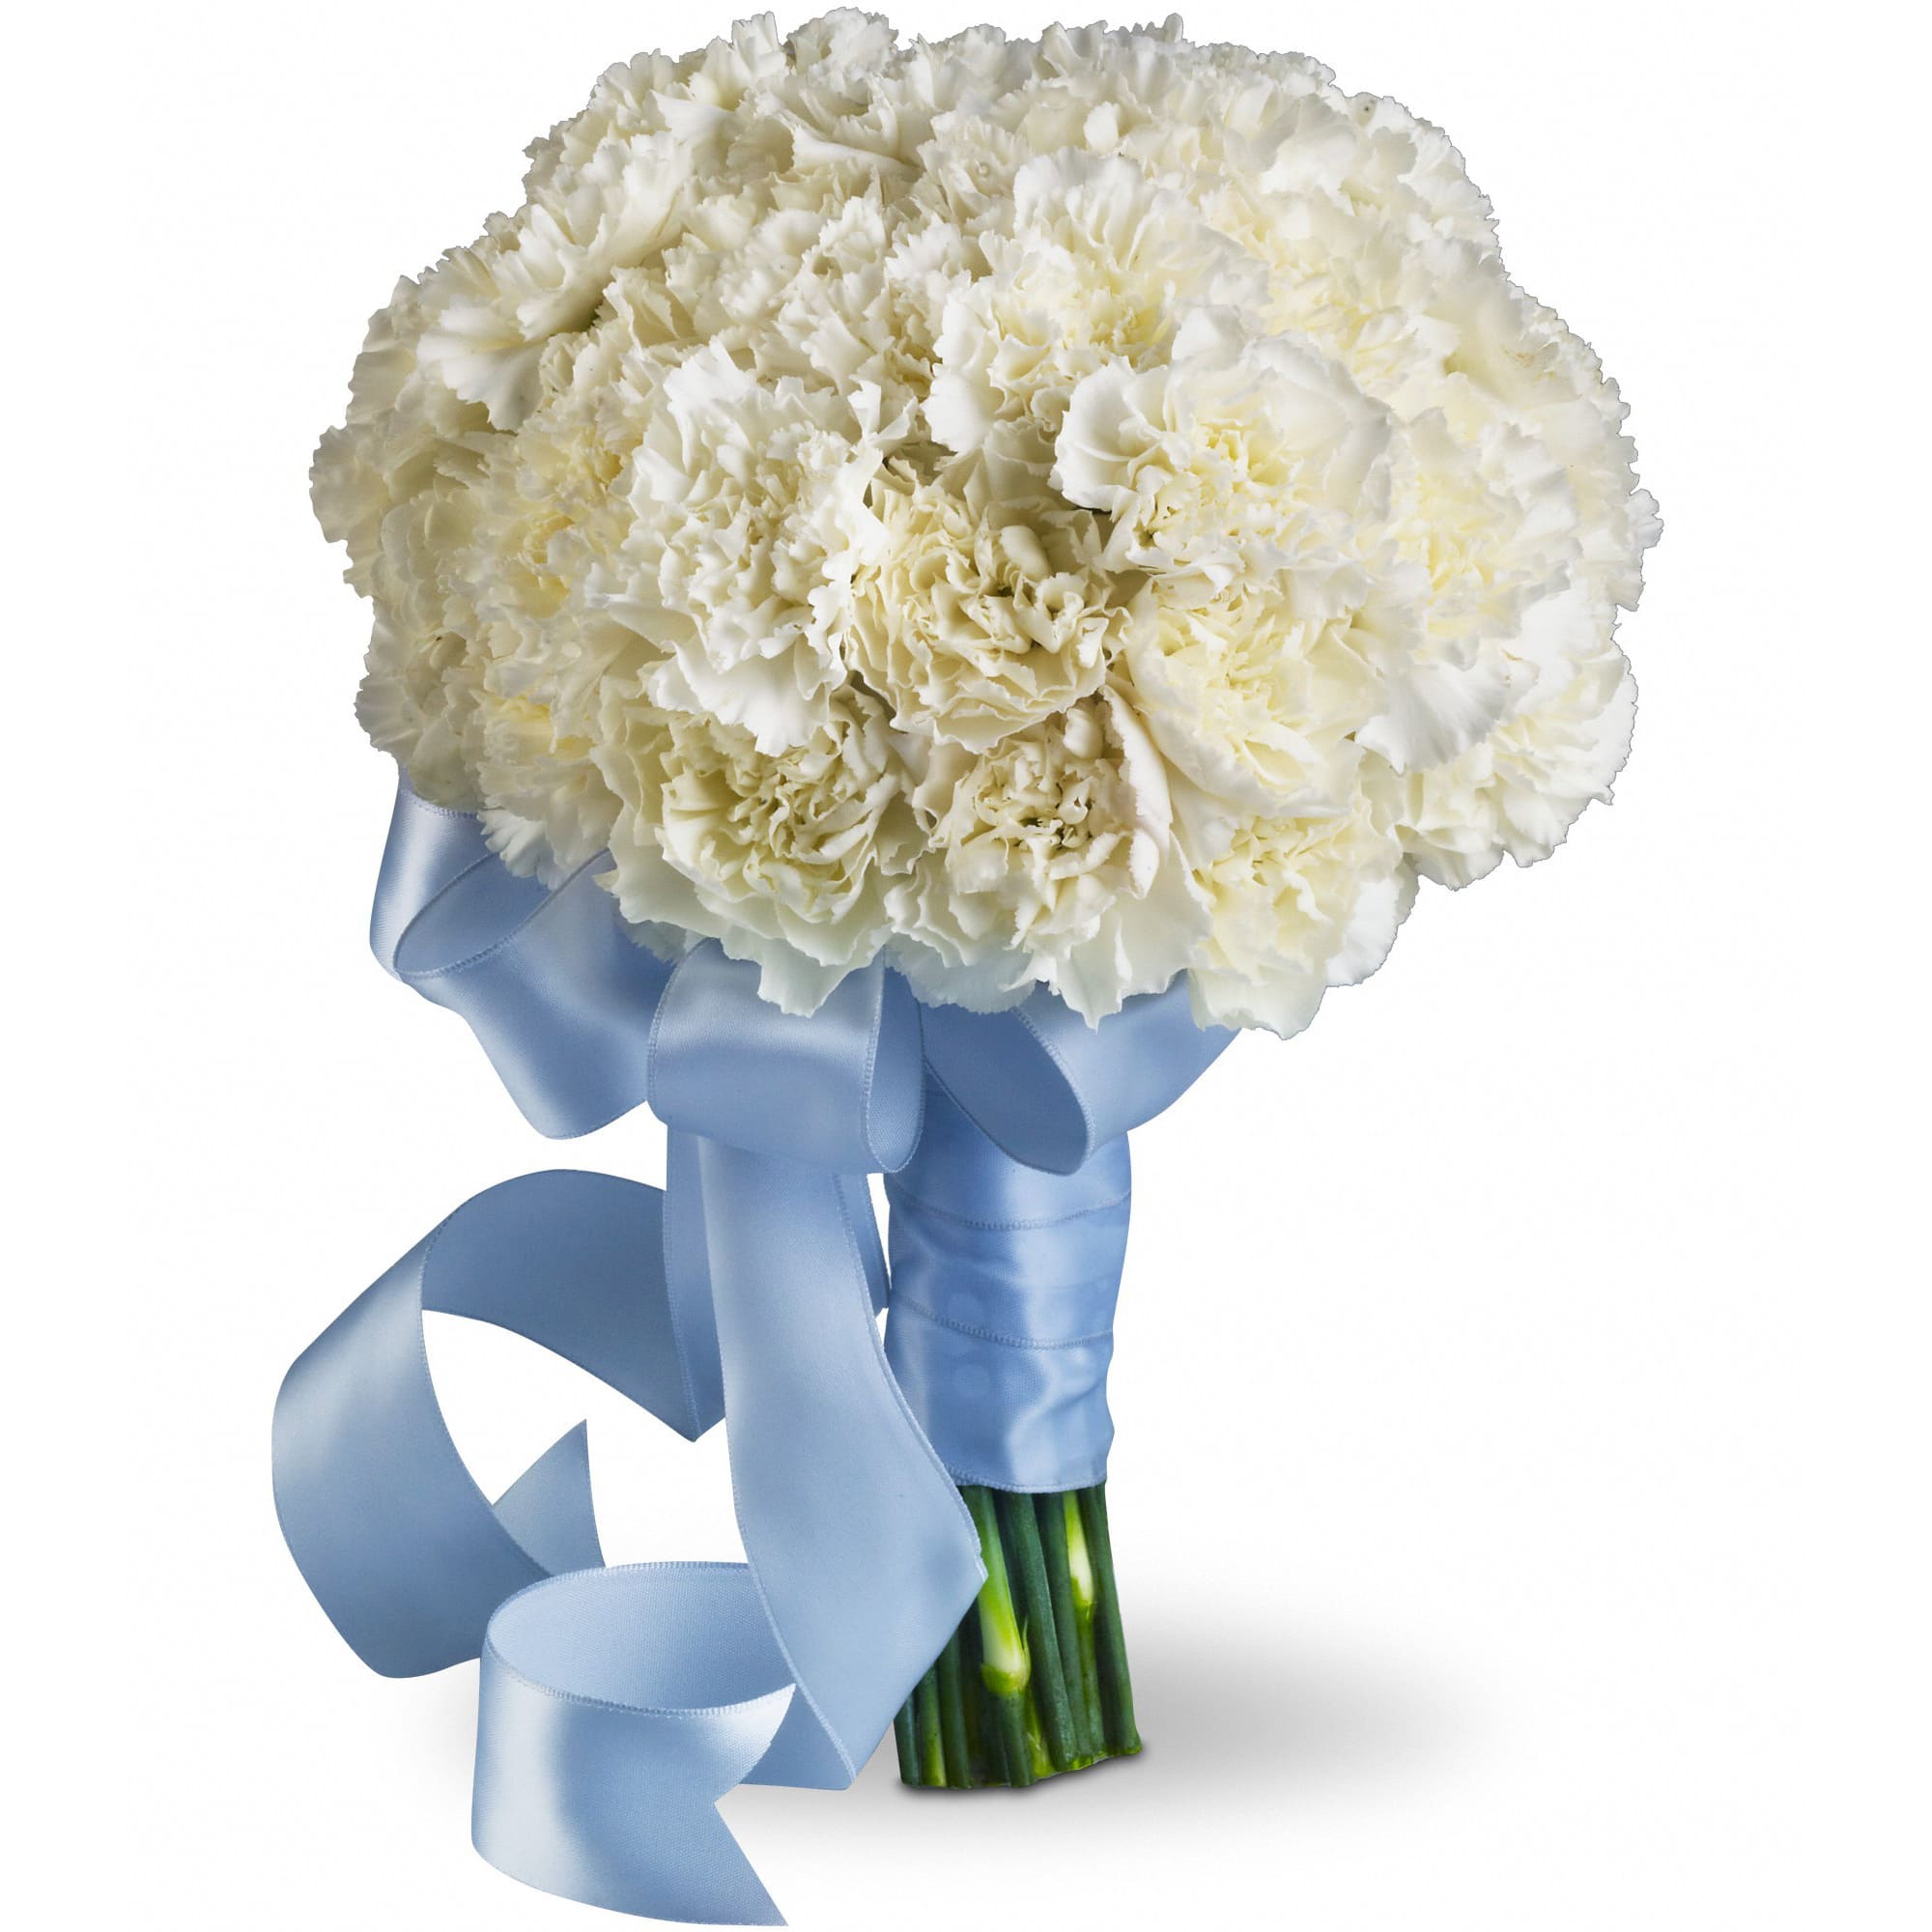 a wedding bouquet